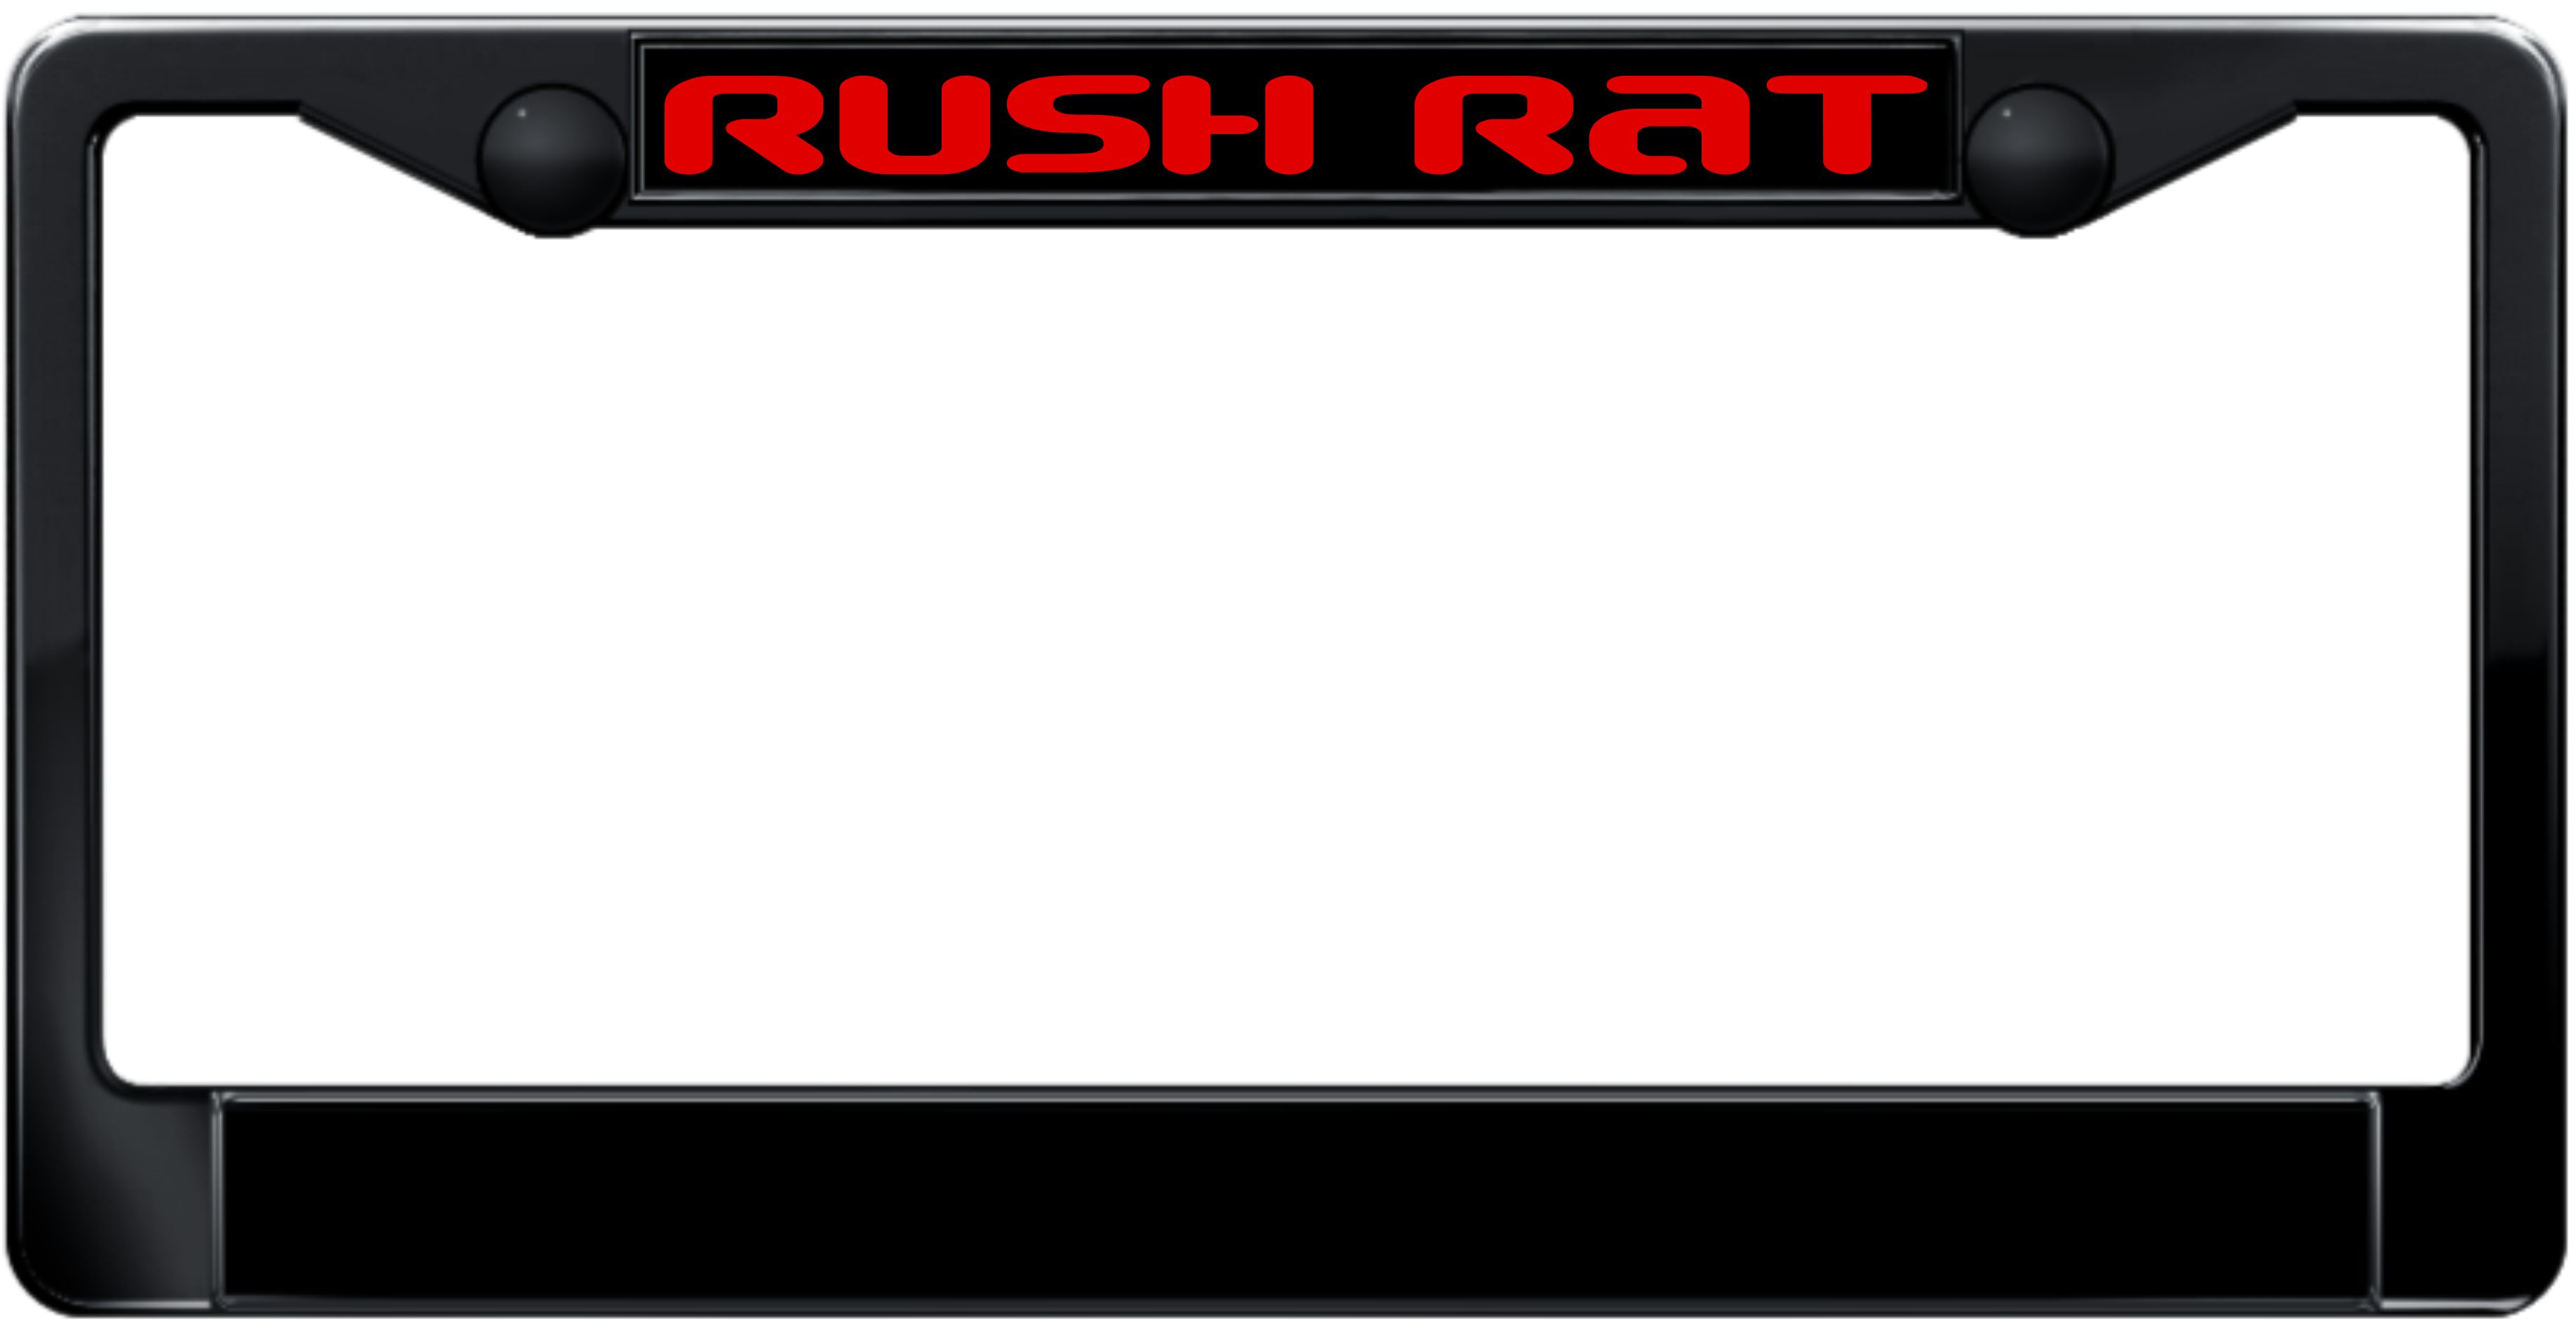 Rush Rat Plastic license plate frame